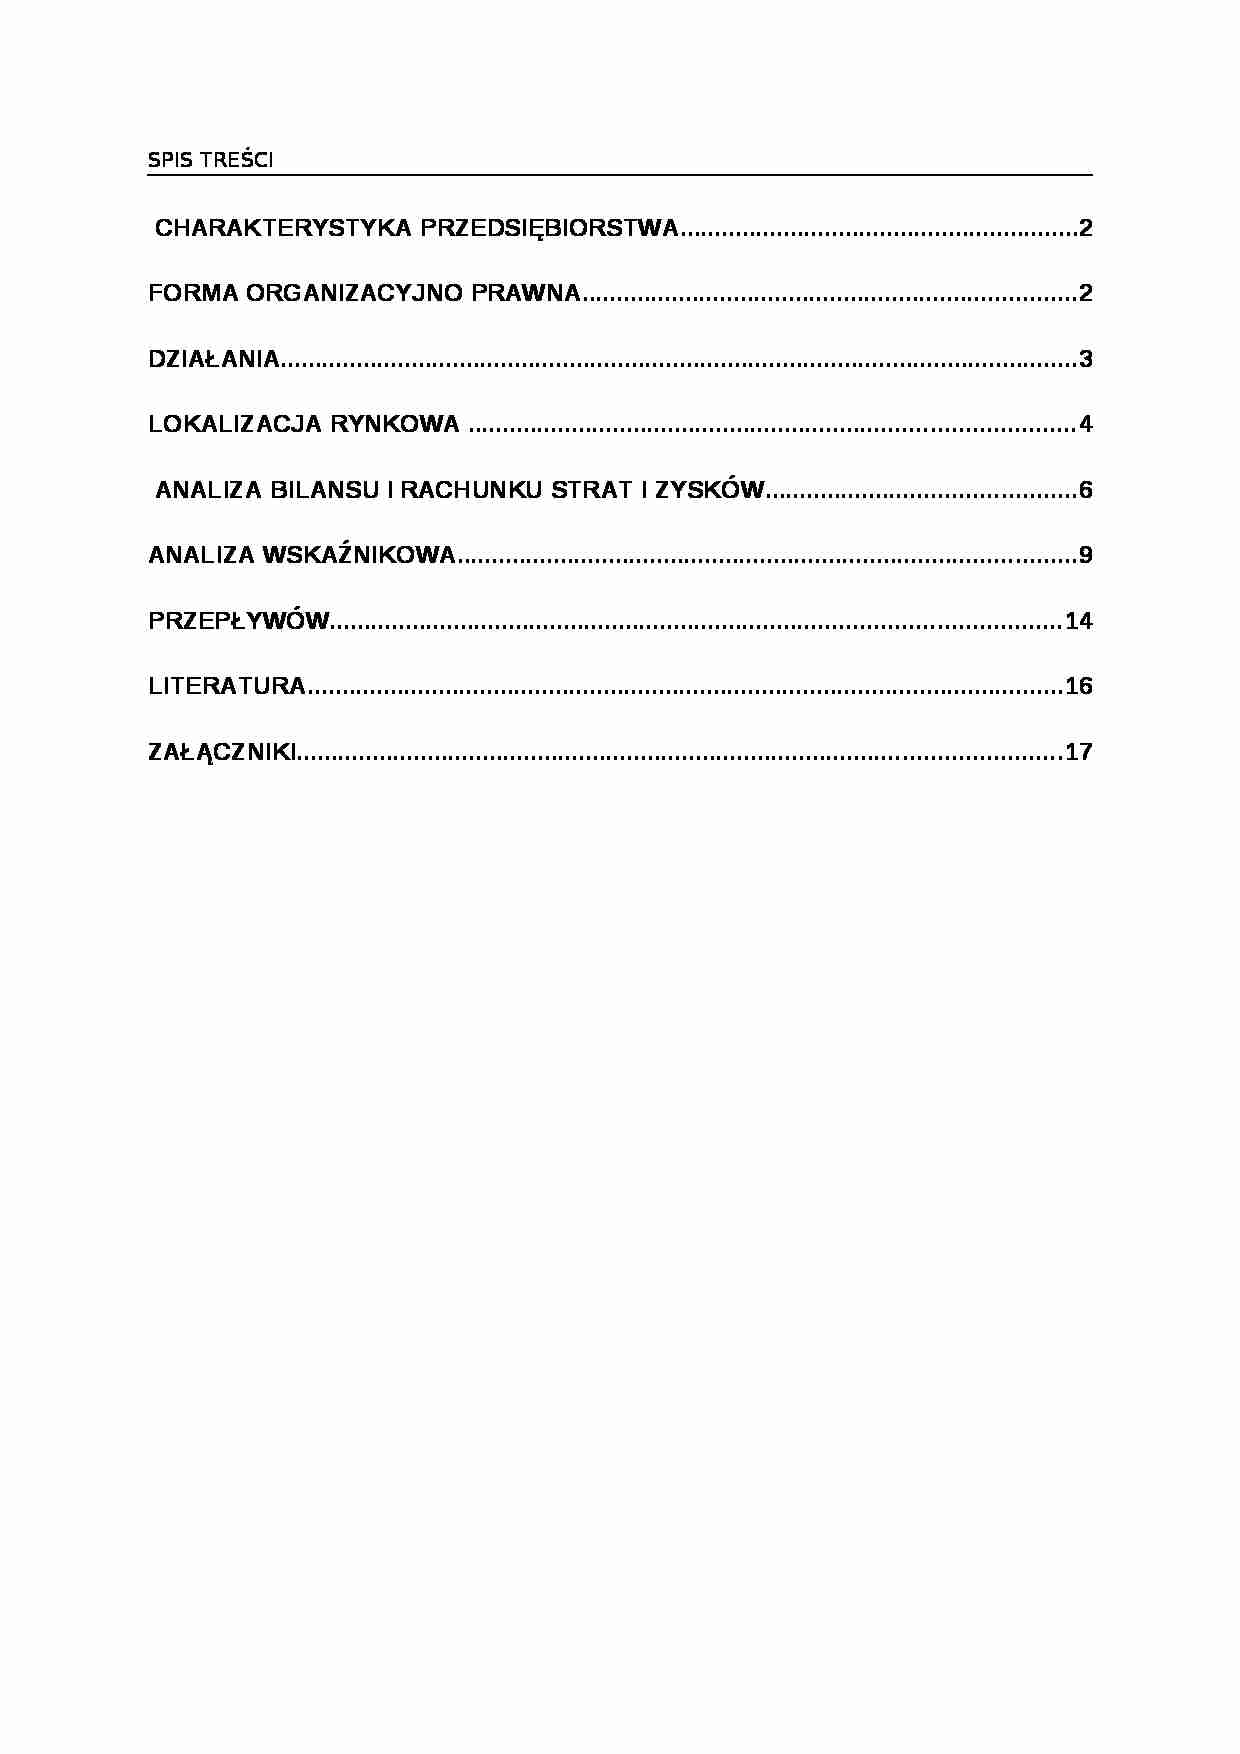 Analiza spółki GPRD - Walne Zgromadzenie - strona 1